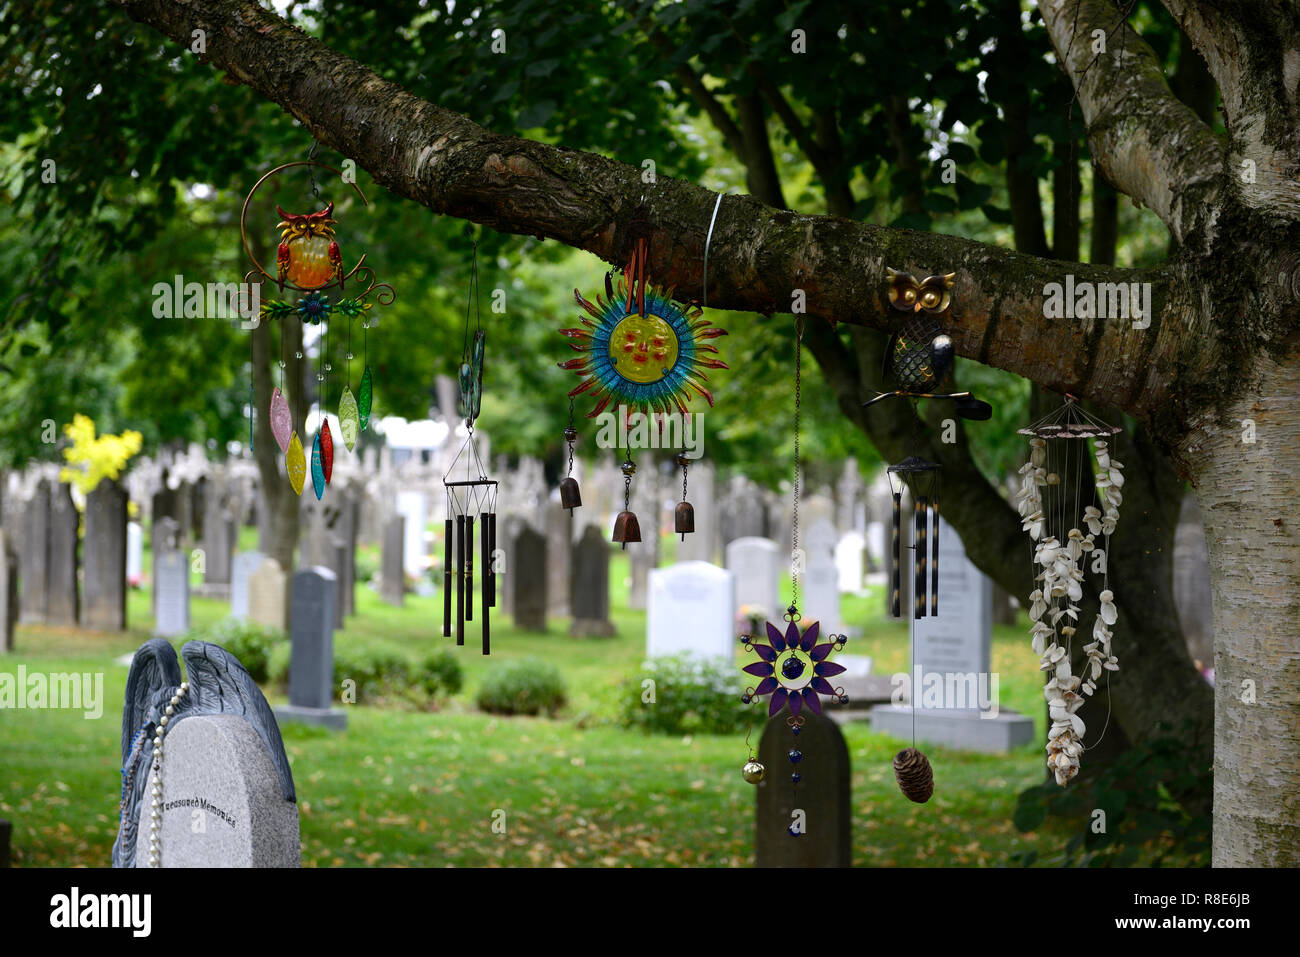 El Wind Chimes,carillón de viento,cementerio,cementerios,graves,tumbas,memoria,memorial,la paz,tranquila,RM Irlanda Foto de stock